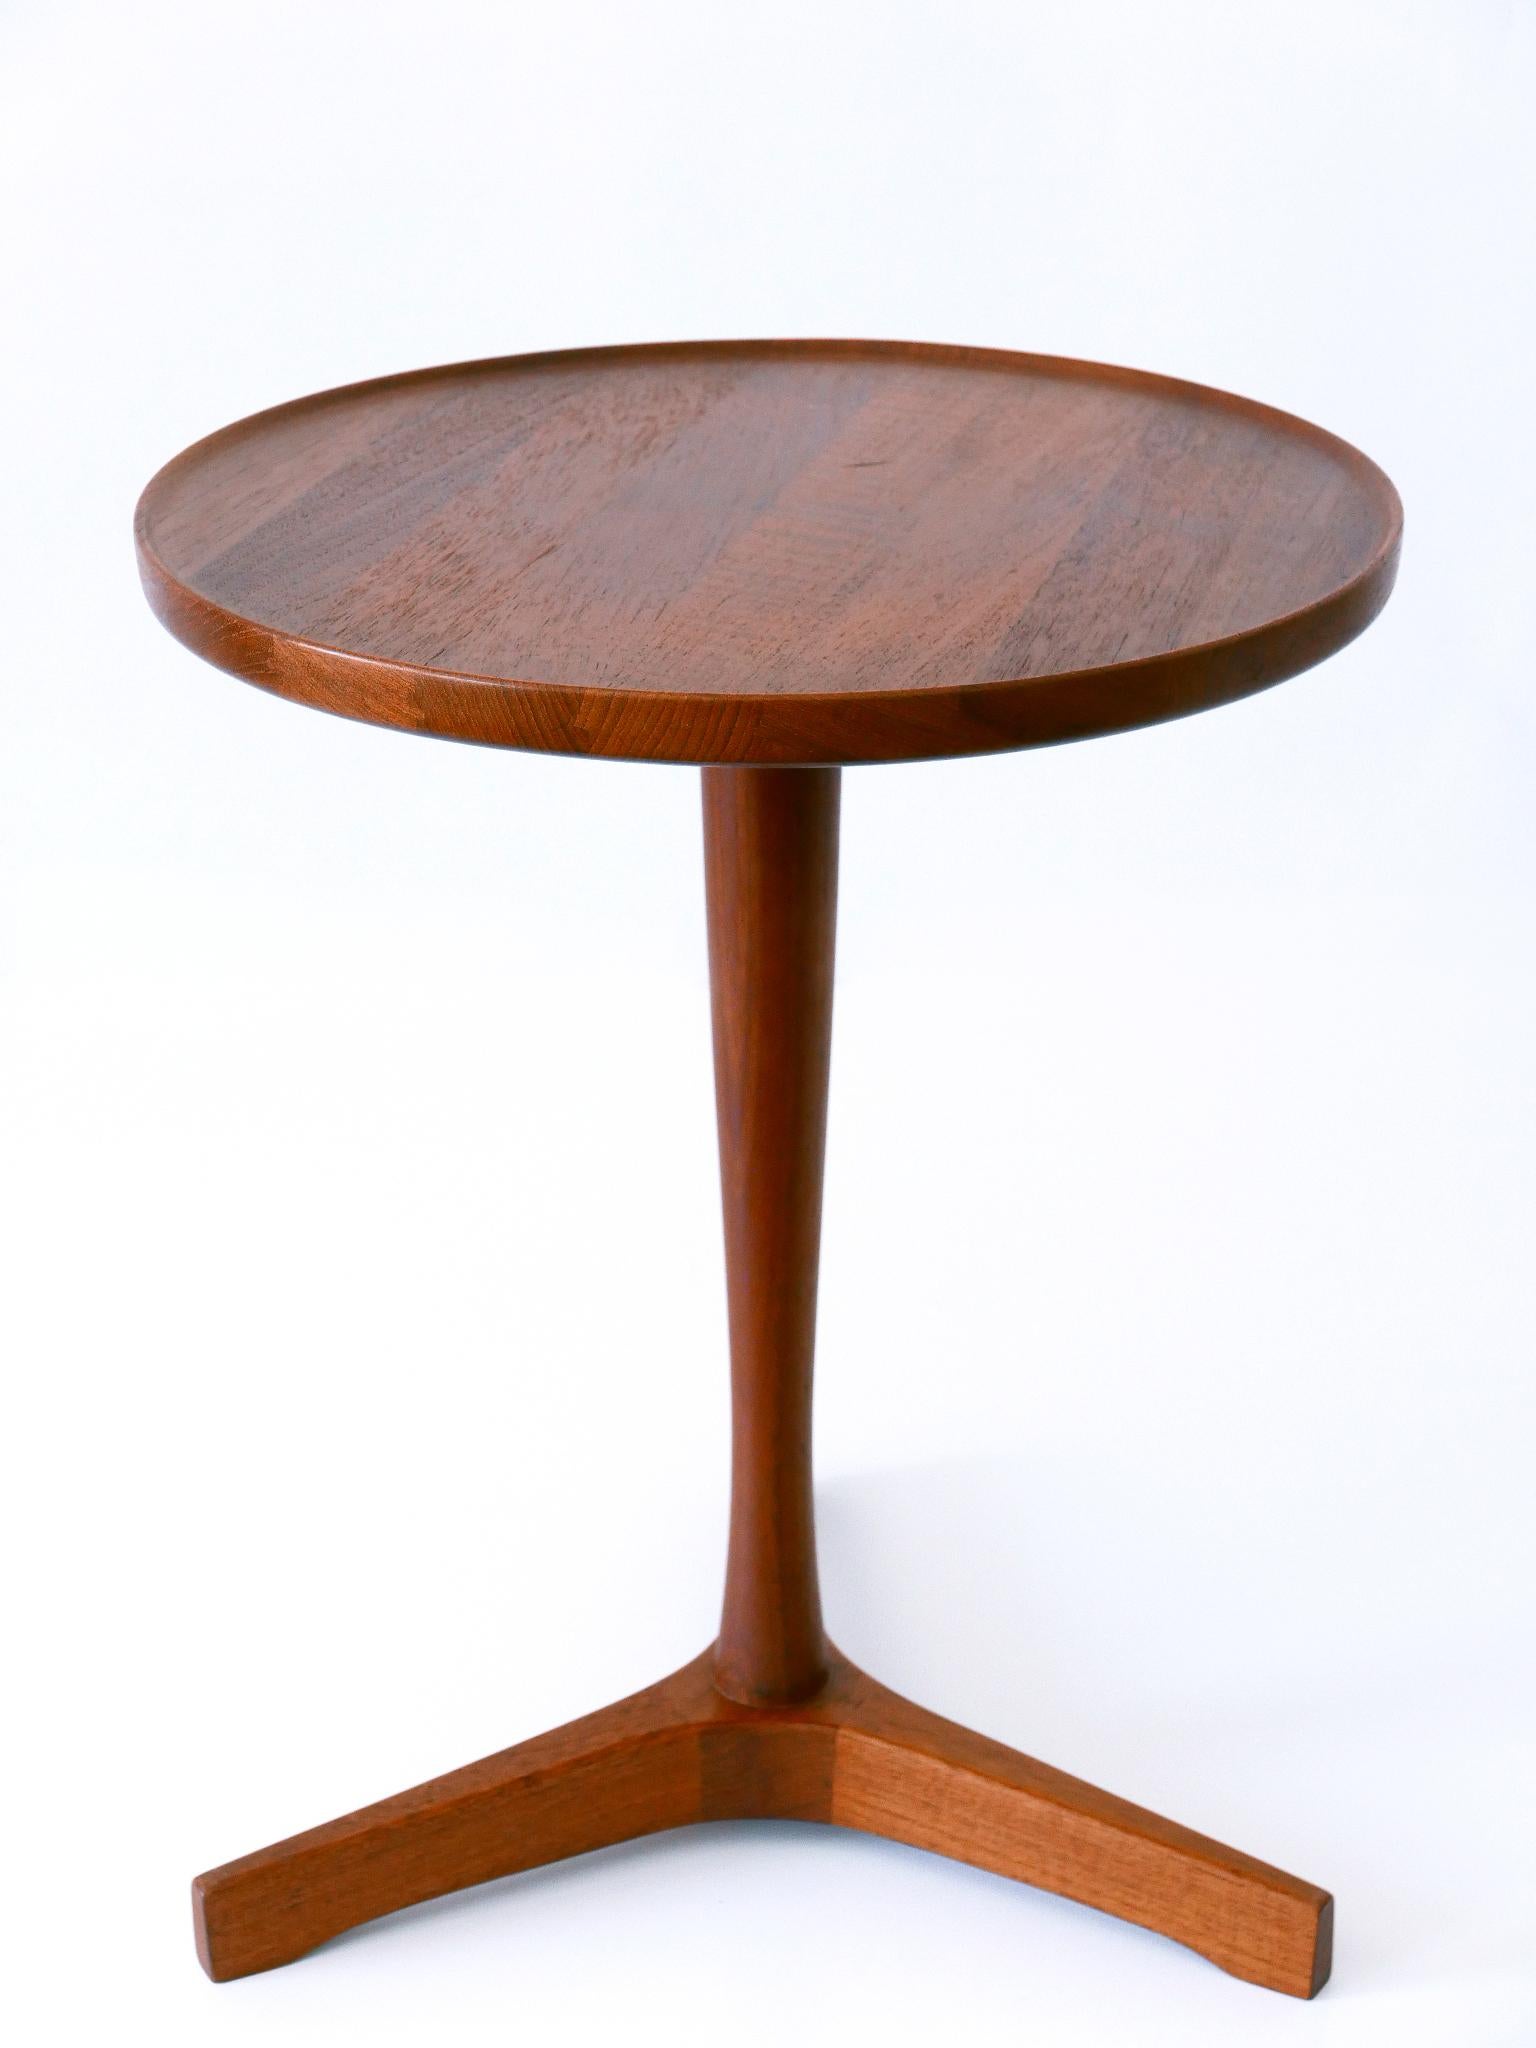 Elegant Mid-Century Modern Teak Side Table by Hans C. Andersen for Artek 1960s For Sale 3